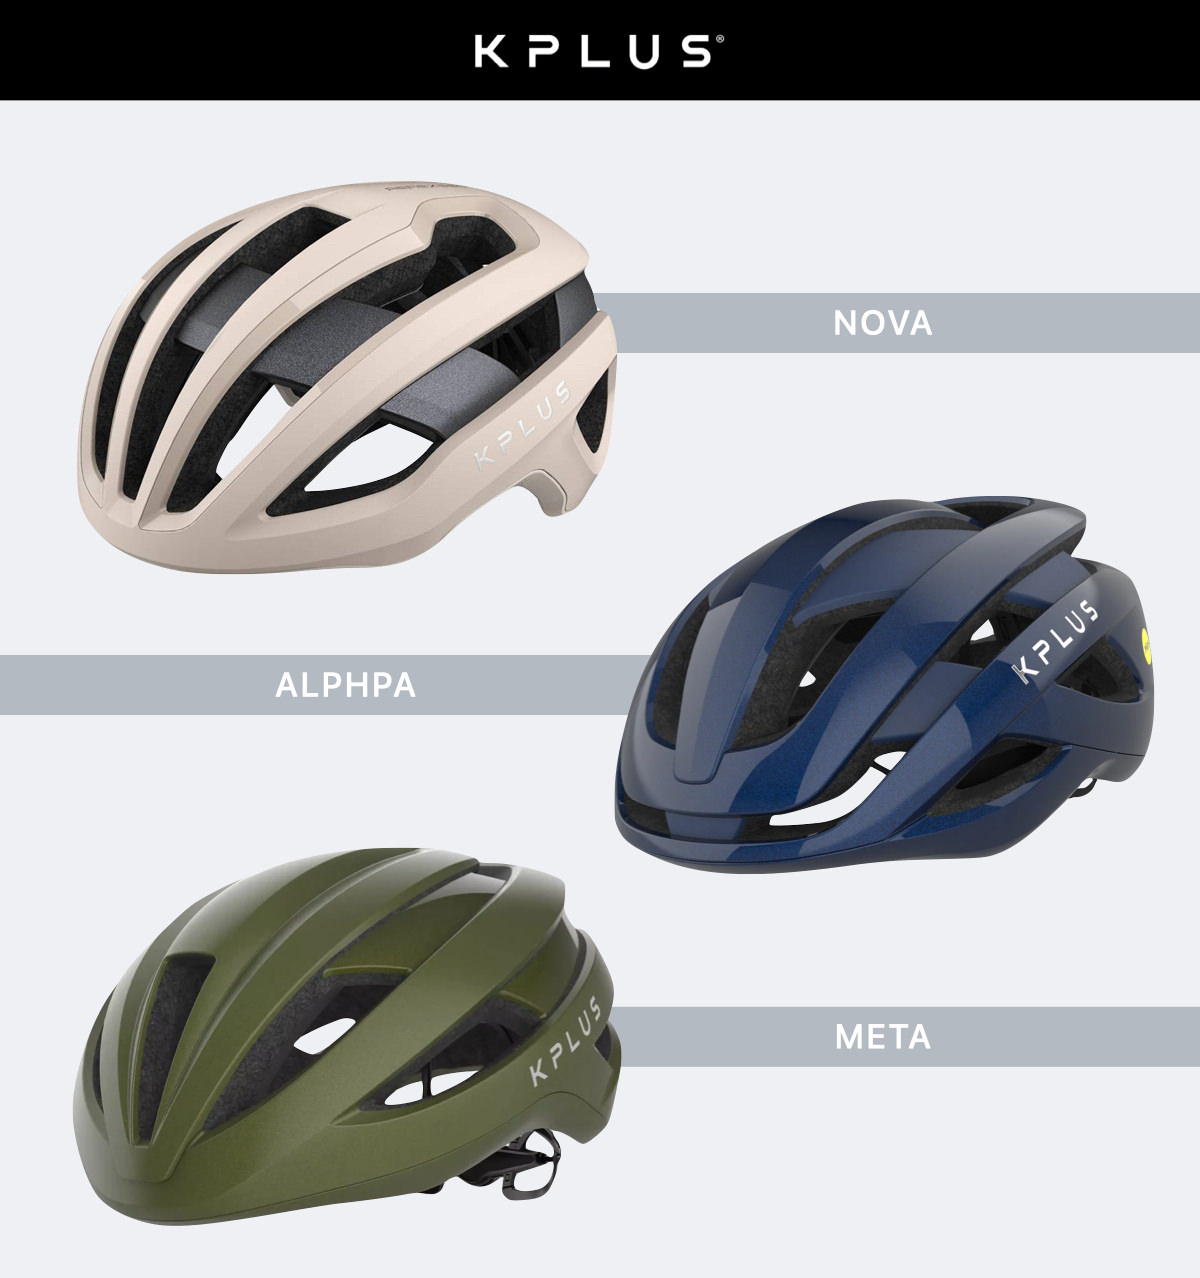 ロードバイク用ヘルメット購入ガイド - Kask / Giro / POC / KPLUS etc 